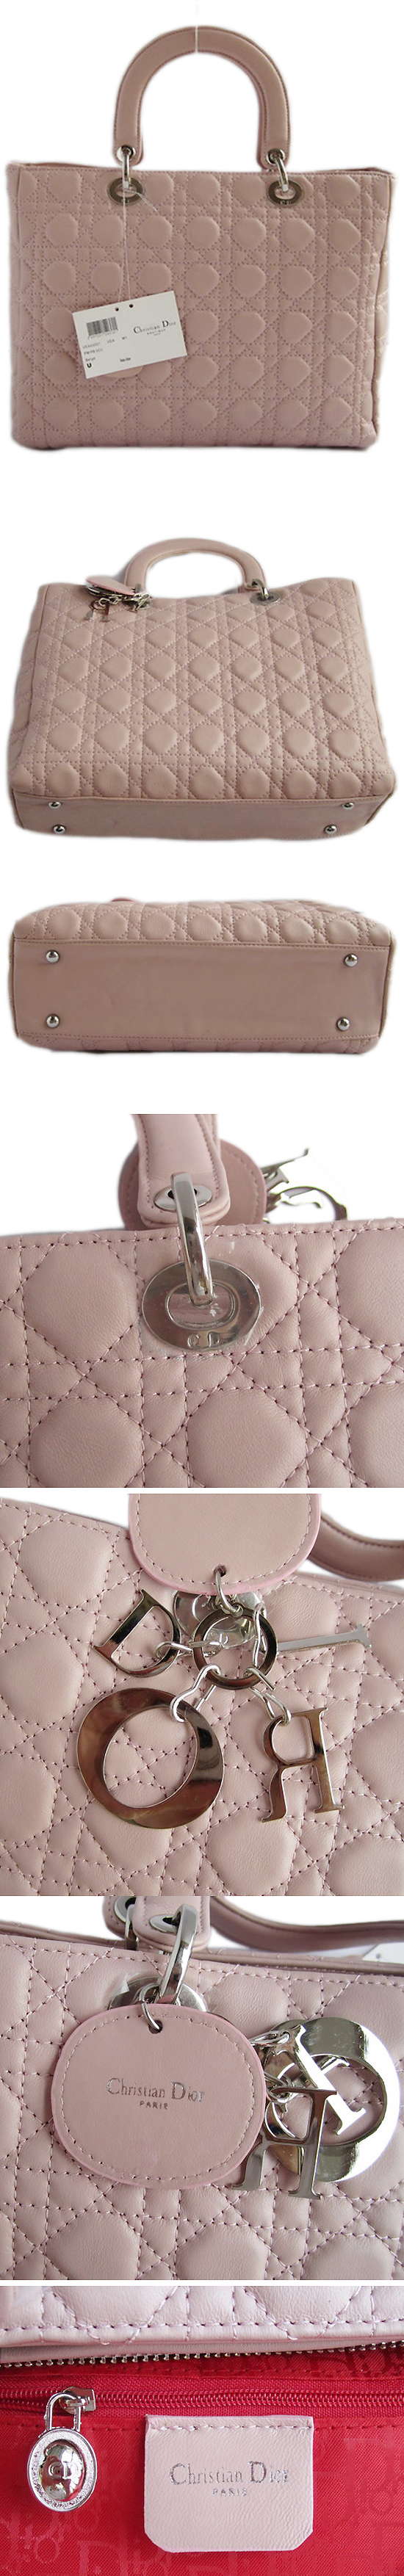 ブランド通販DIOR-ディオール-bag-2011-pink激安屋-ブランドコピー